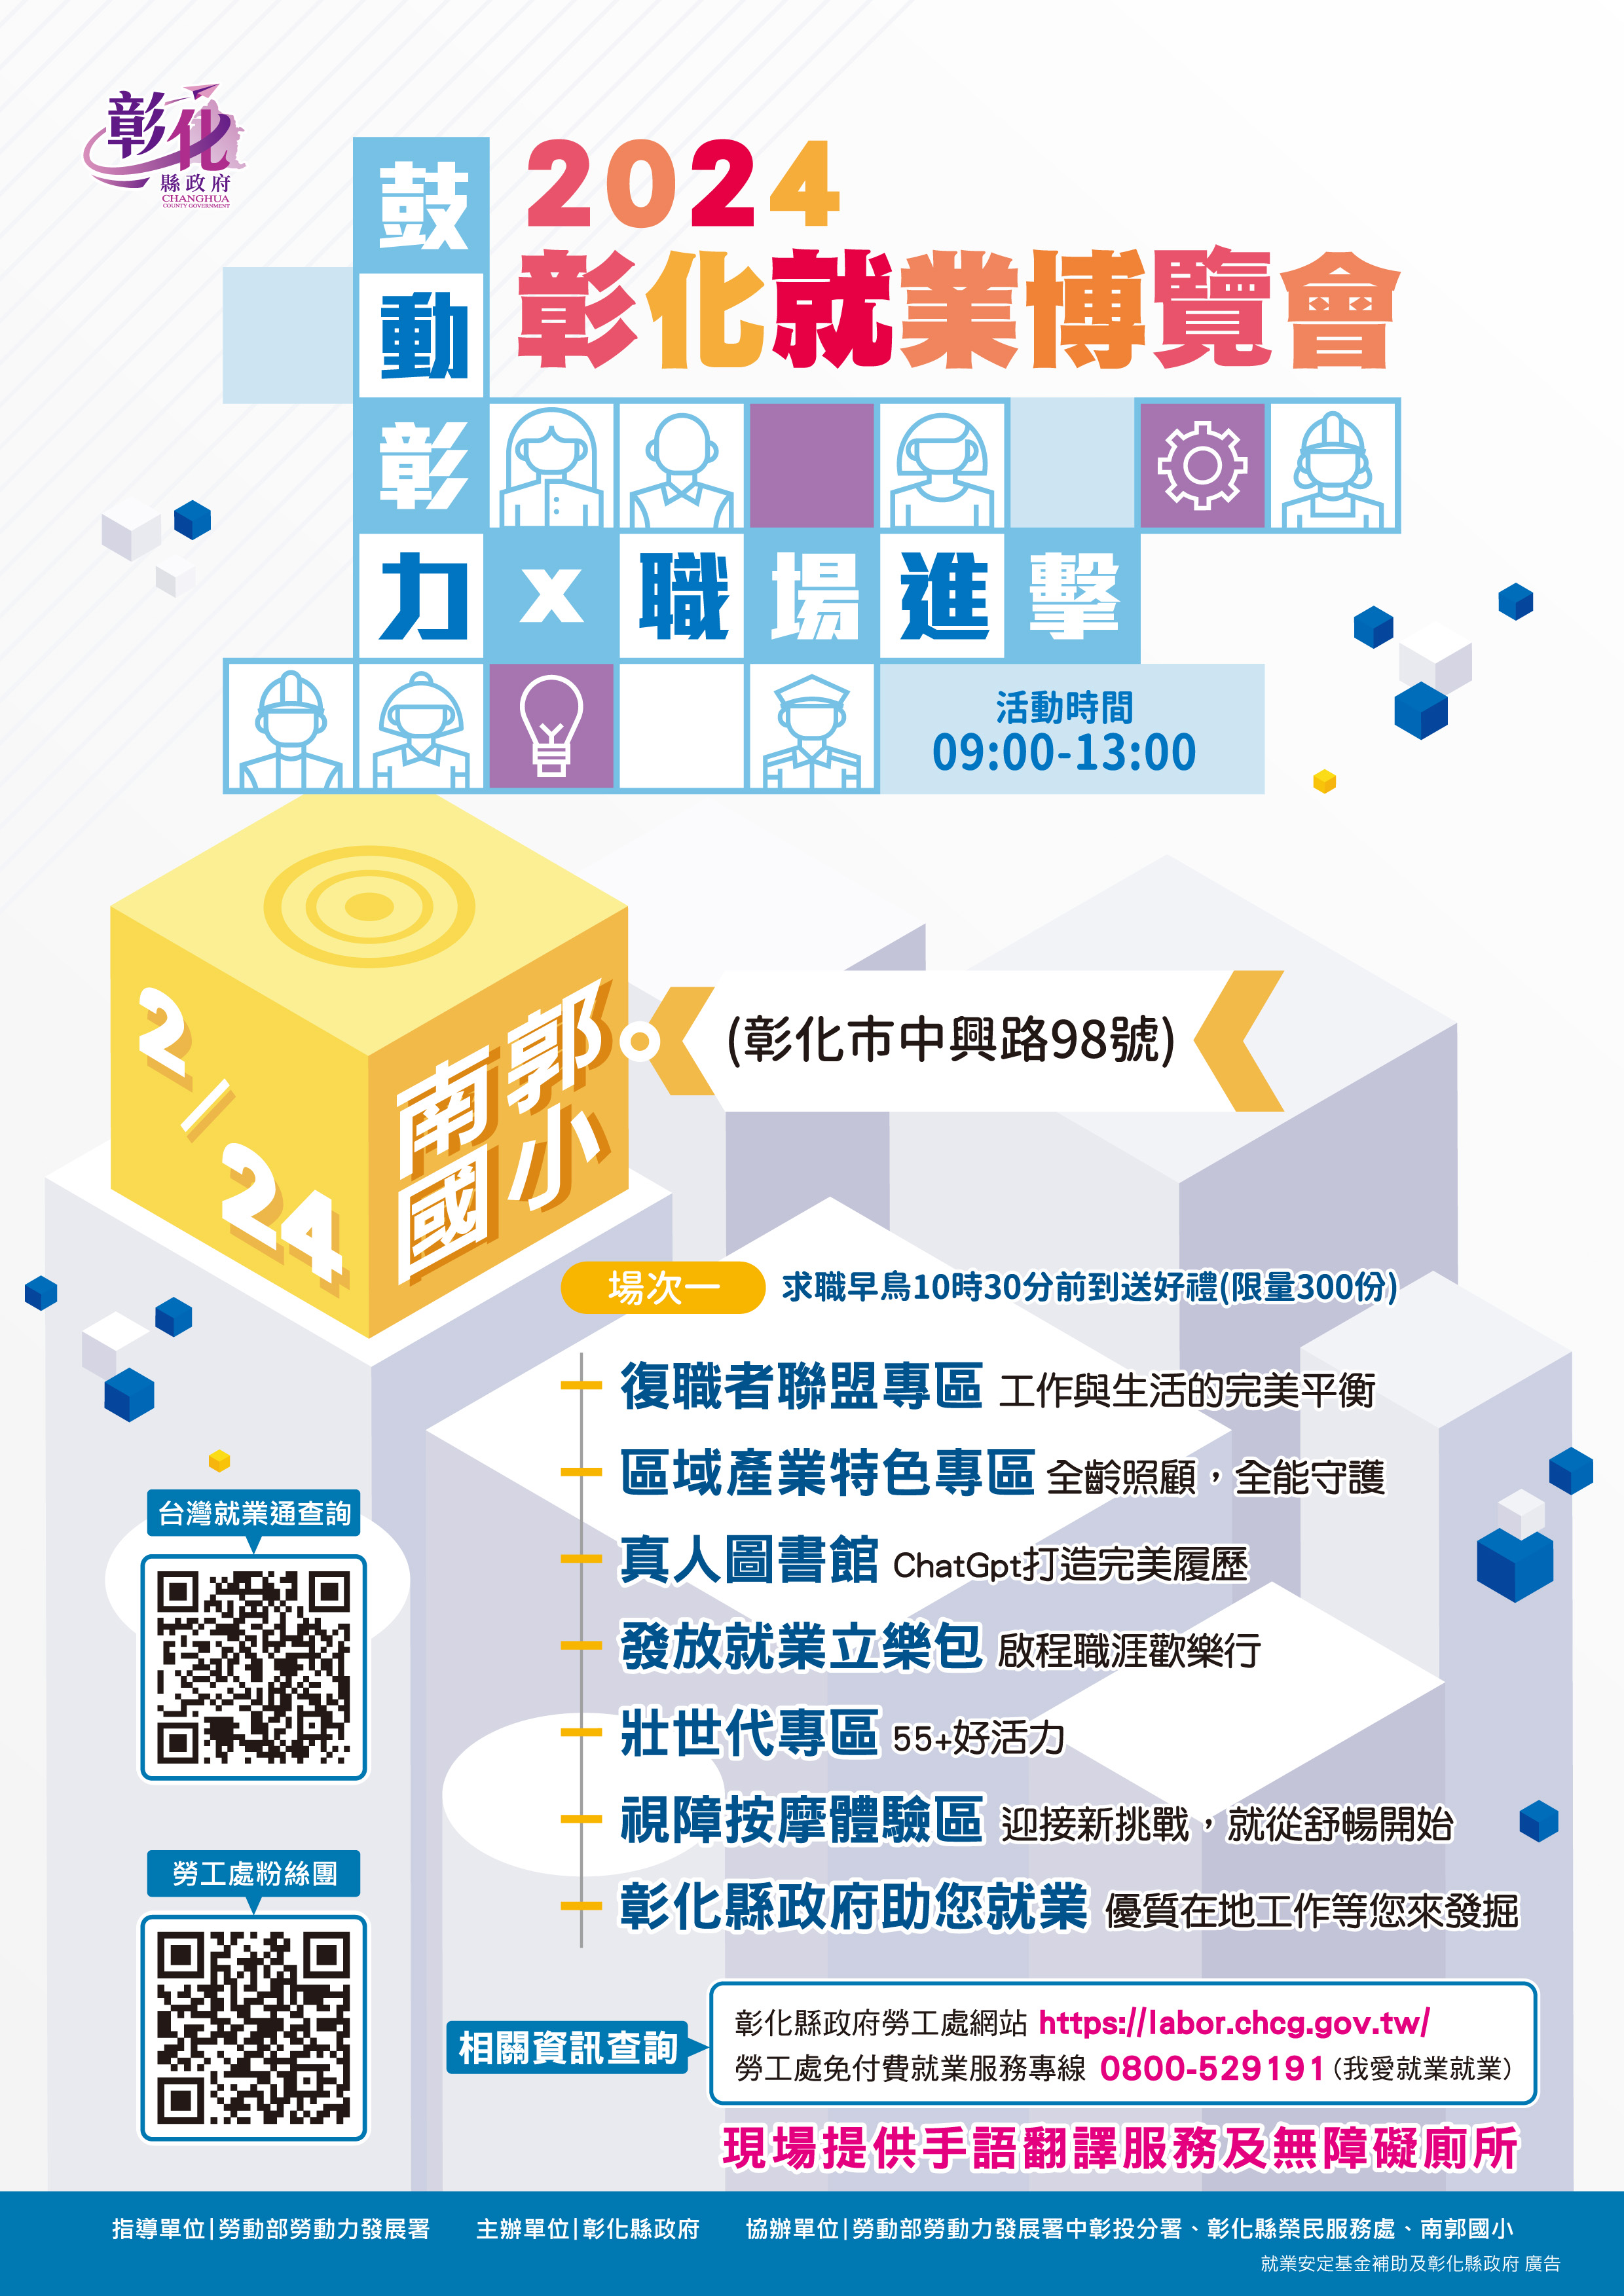 2024年第1場就業博覽會 2月24日在南郭國小